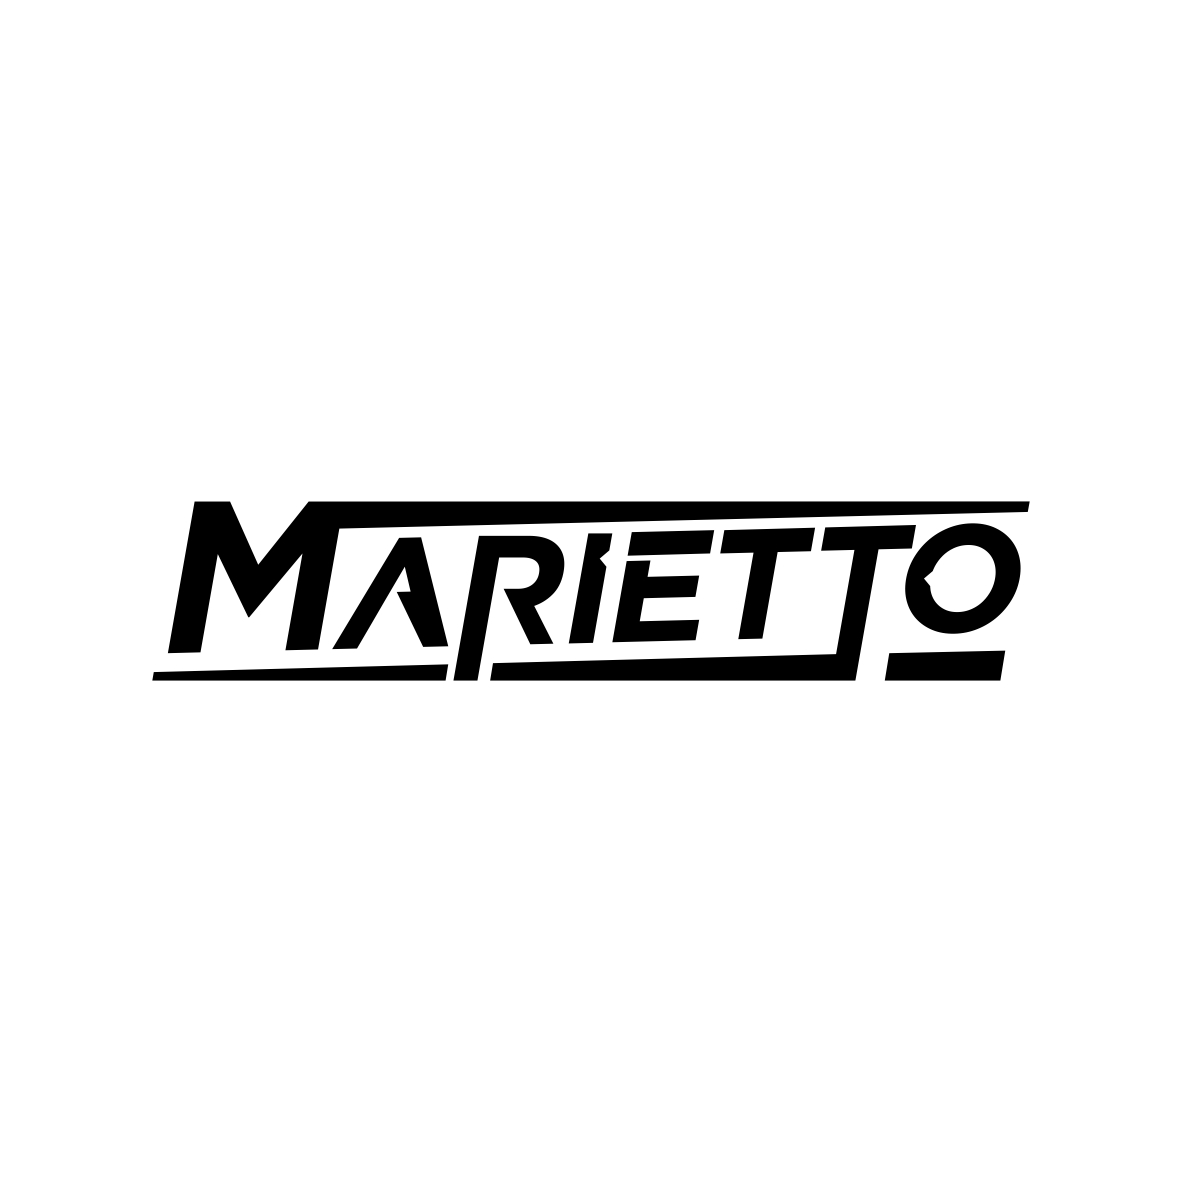 marietto_logo_page-0003